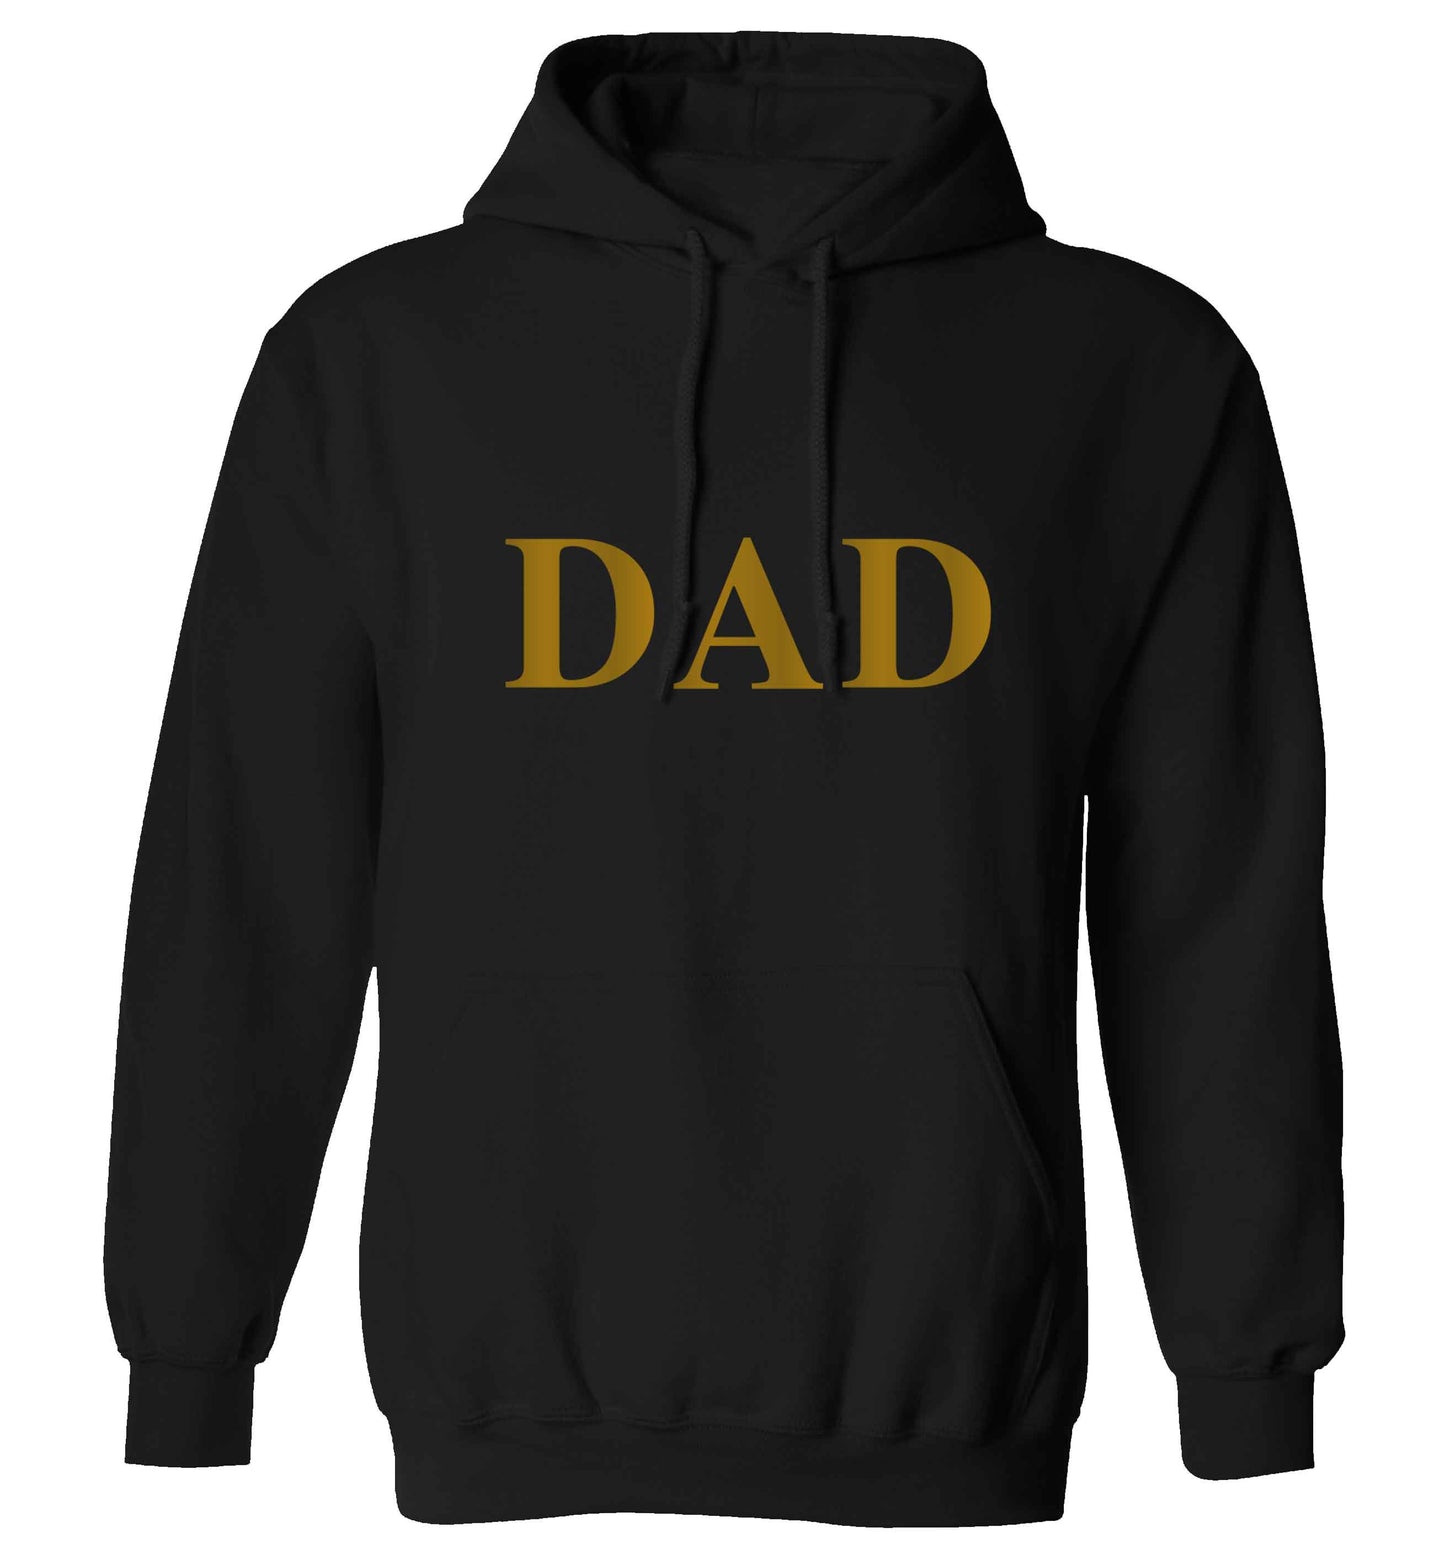 Dad adults unisex black hoodie 2XL